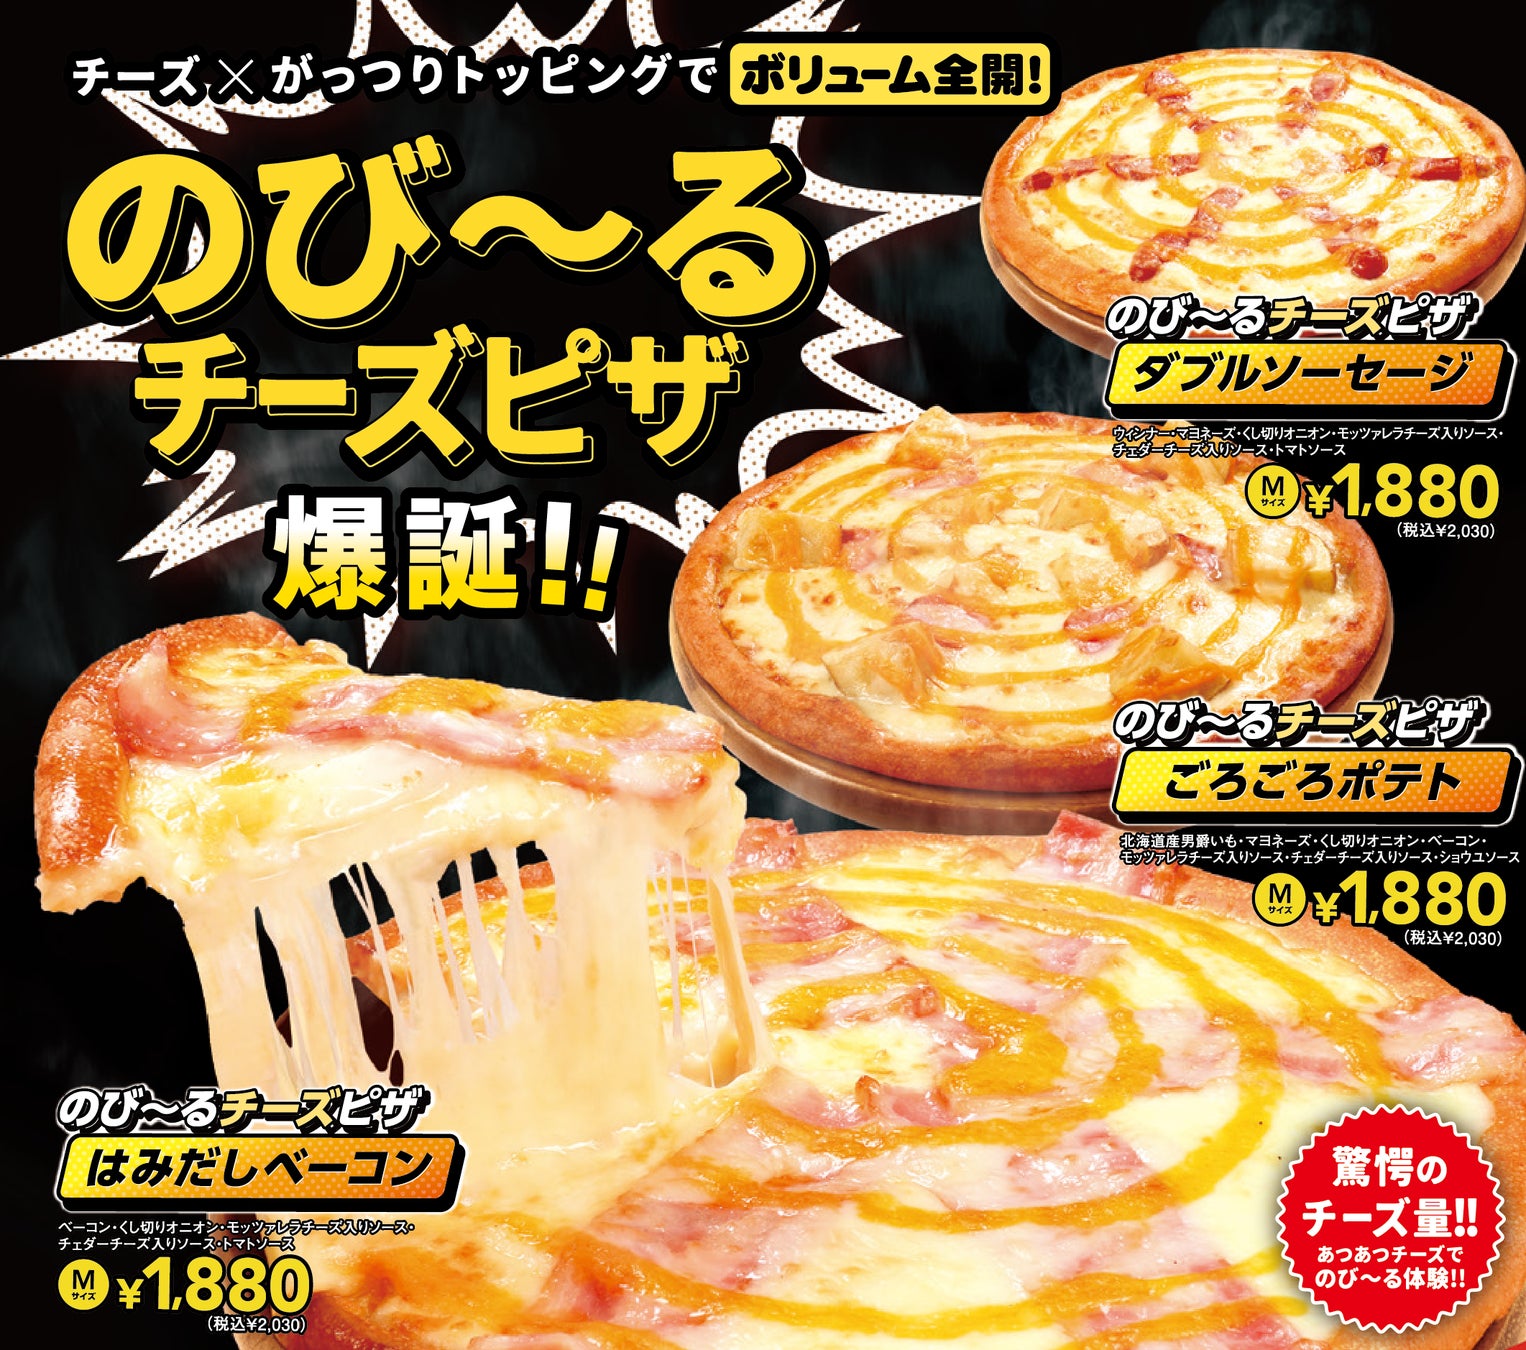 《チーズ×がっつりトッピングでボリューム全開》“のび〜るチーズピザ”爆誕!!